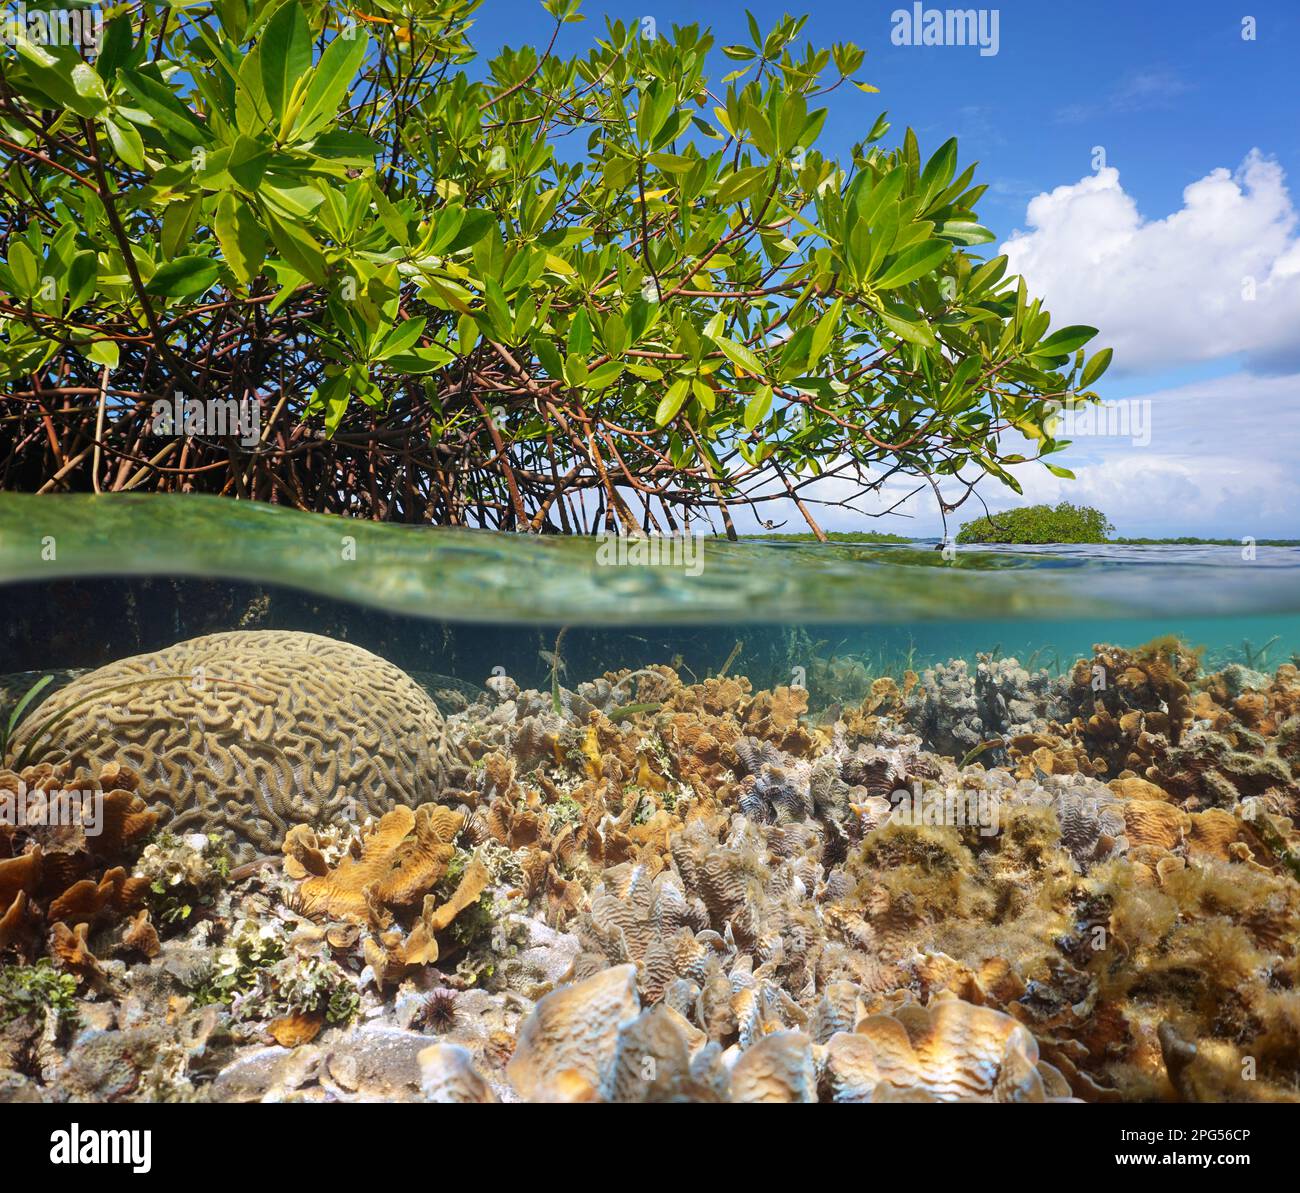 Mangrove dans la mer avec des coraux sous l'eau, vue partagée sur et sous la surface de l'eau, mer des Caraïbes, Amérique centrale, Panama Banque D'Images